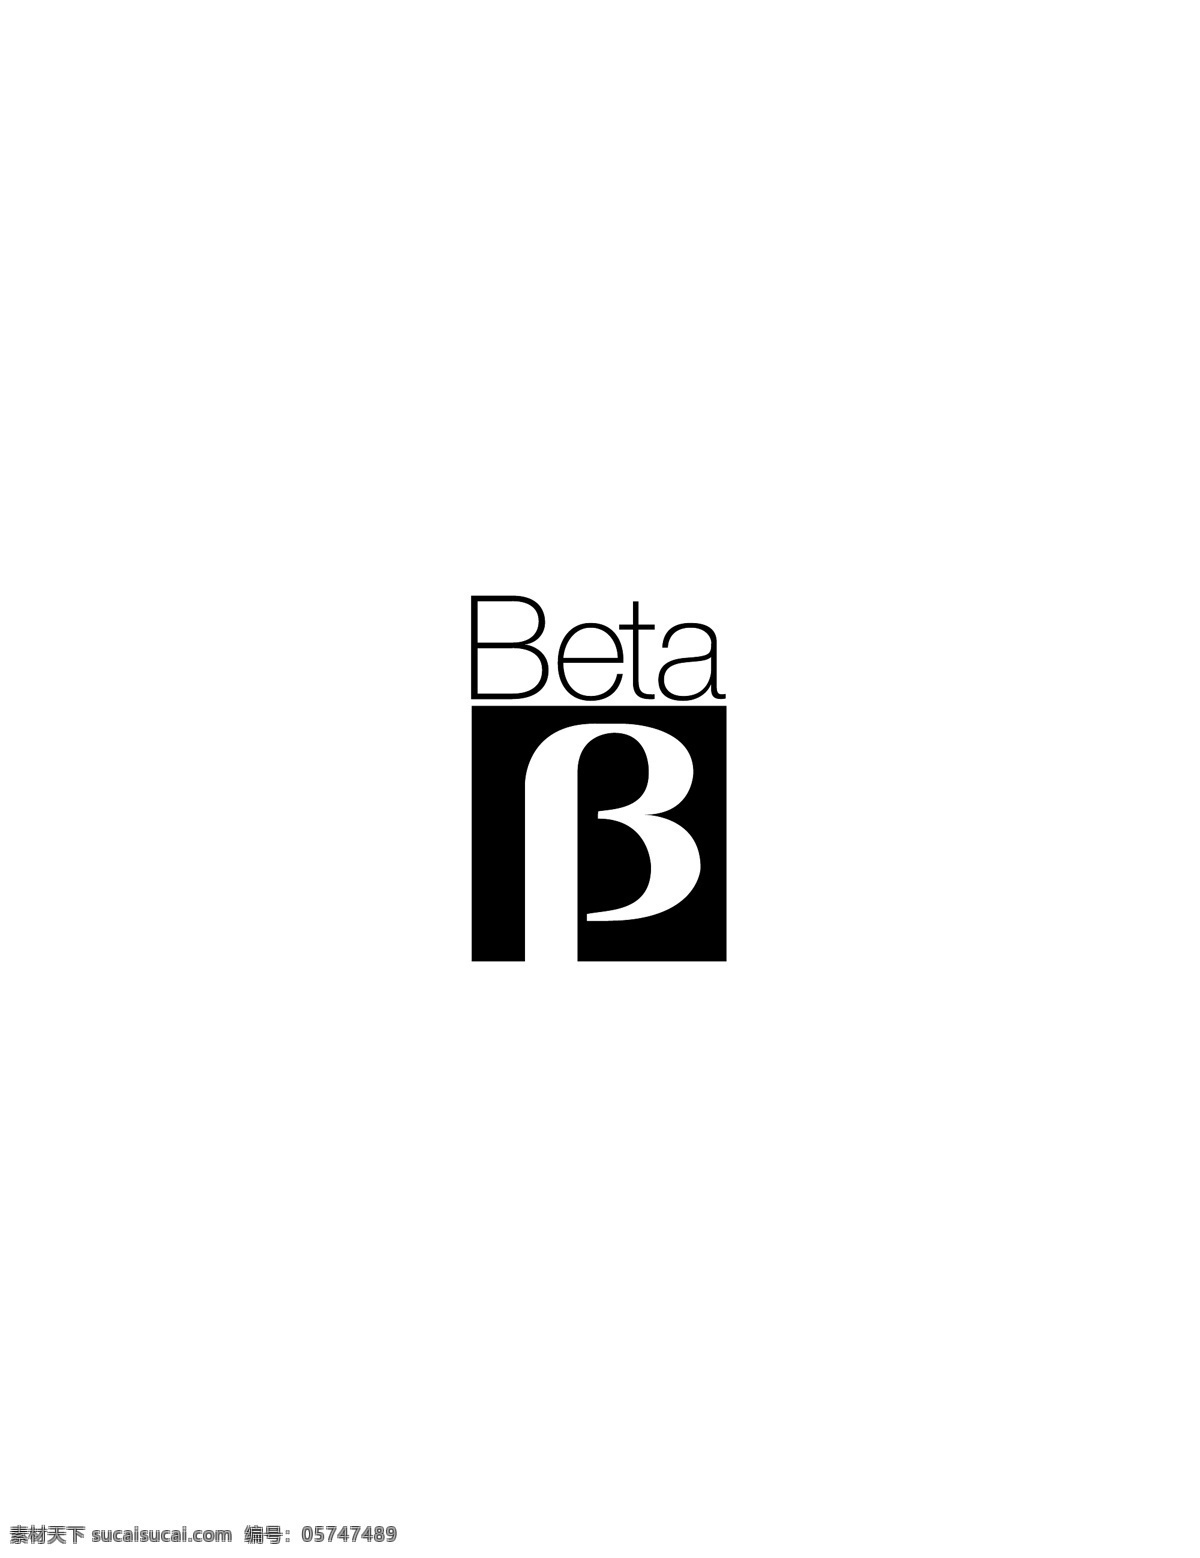 beta logo大全 logo 设计欣赏 商业矢量 矢量下载 软件 硬件 公司 标志 标志设计 欣赏 网页矢量 矢量图 其他矢量图